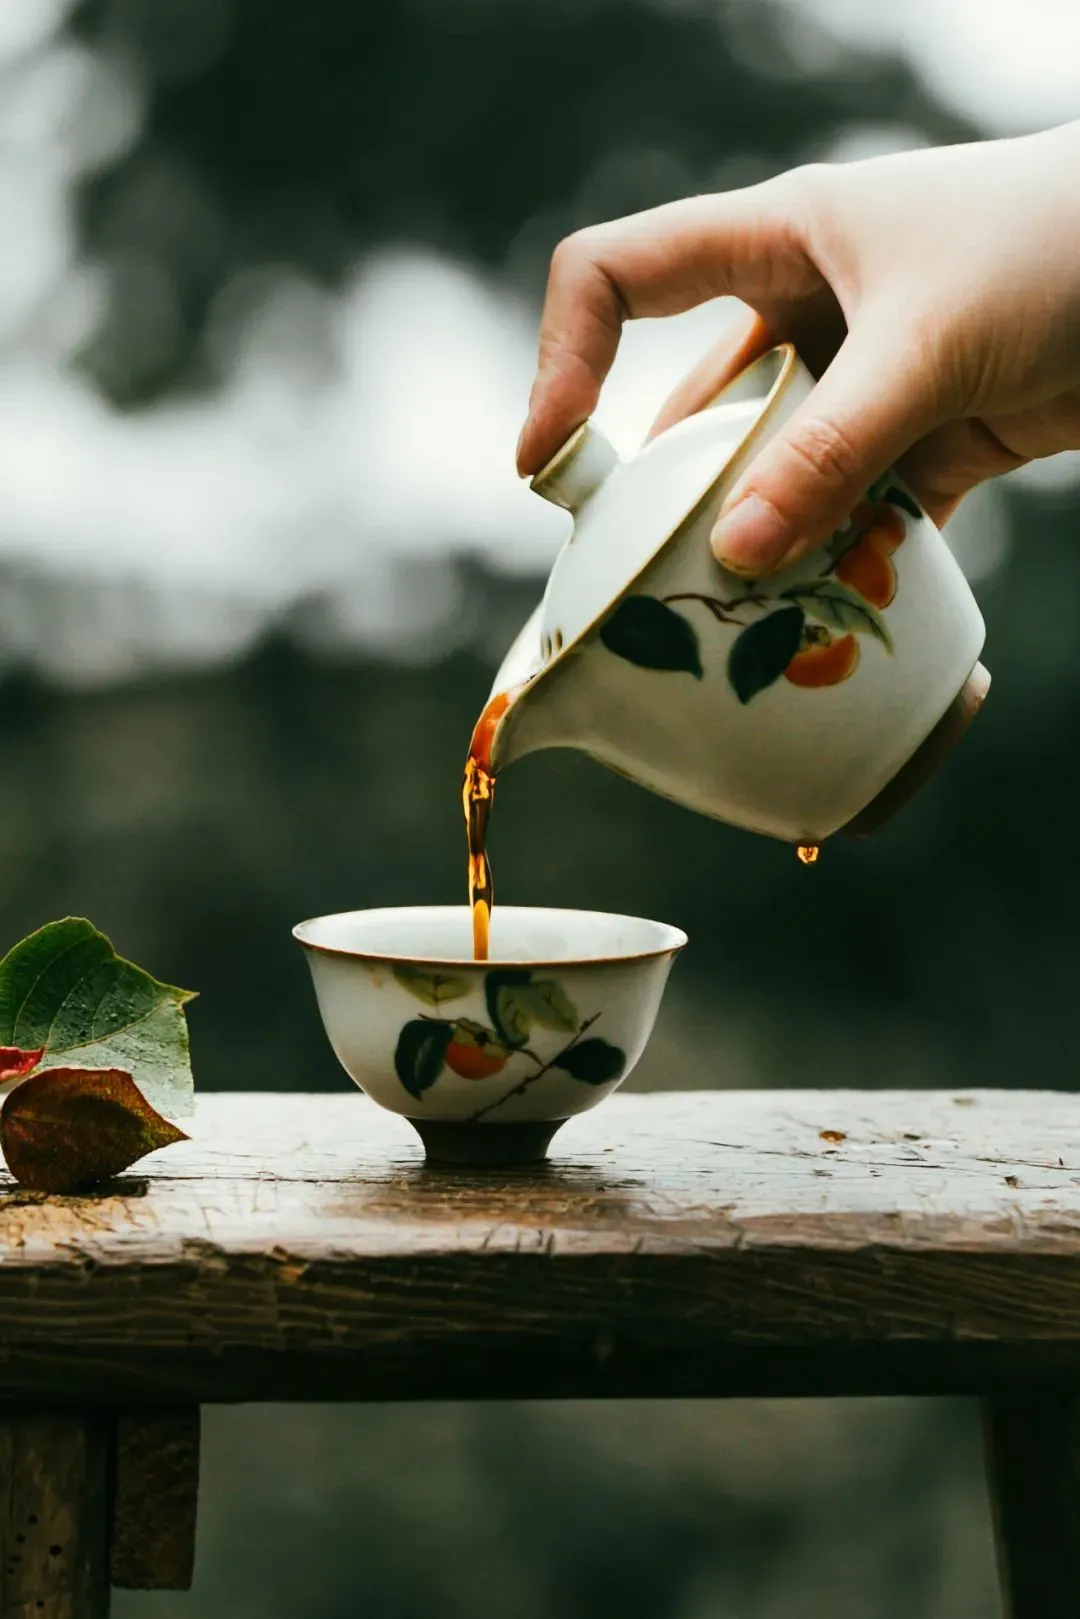 一碗景迈山普洱茶带着浓郁的山野气韵 图/视觉中国